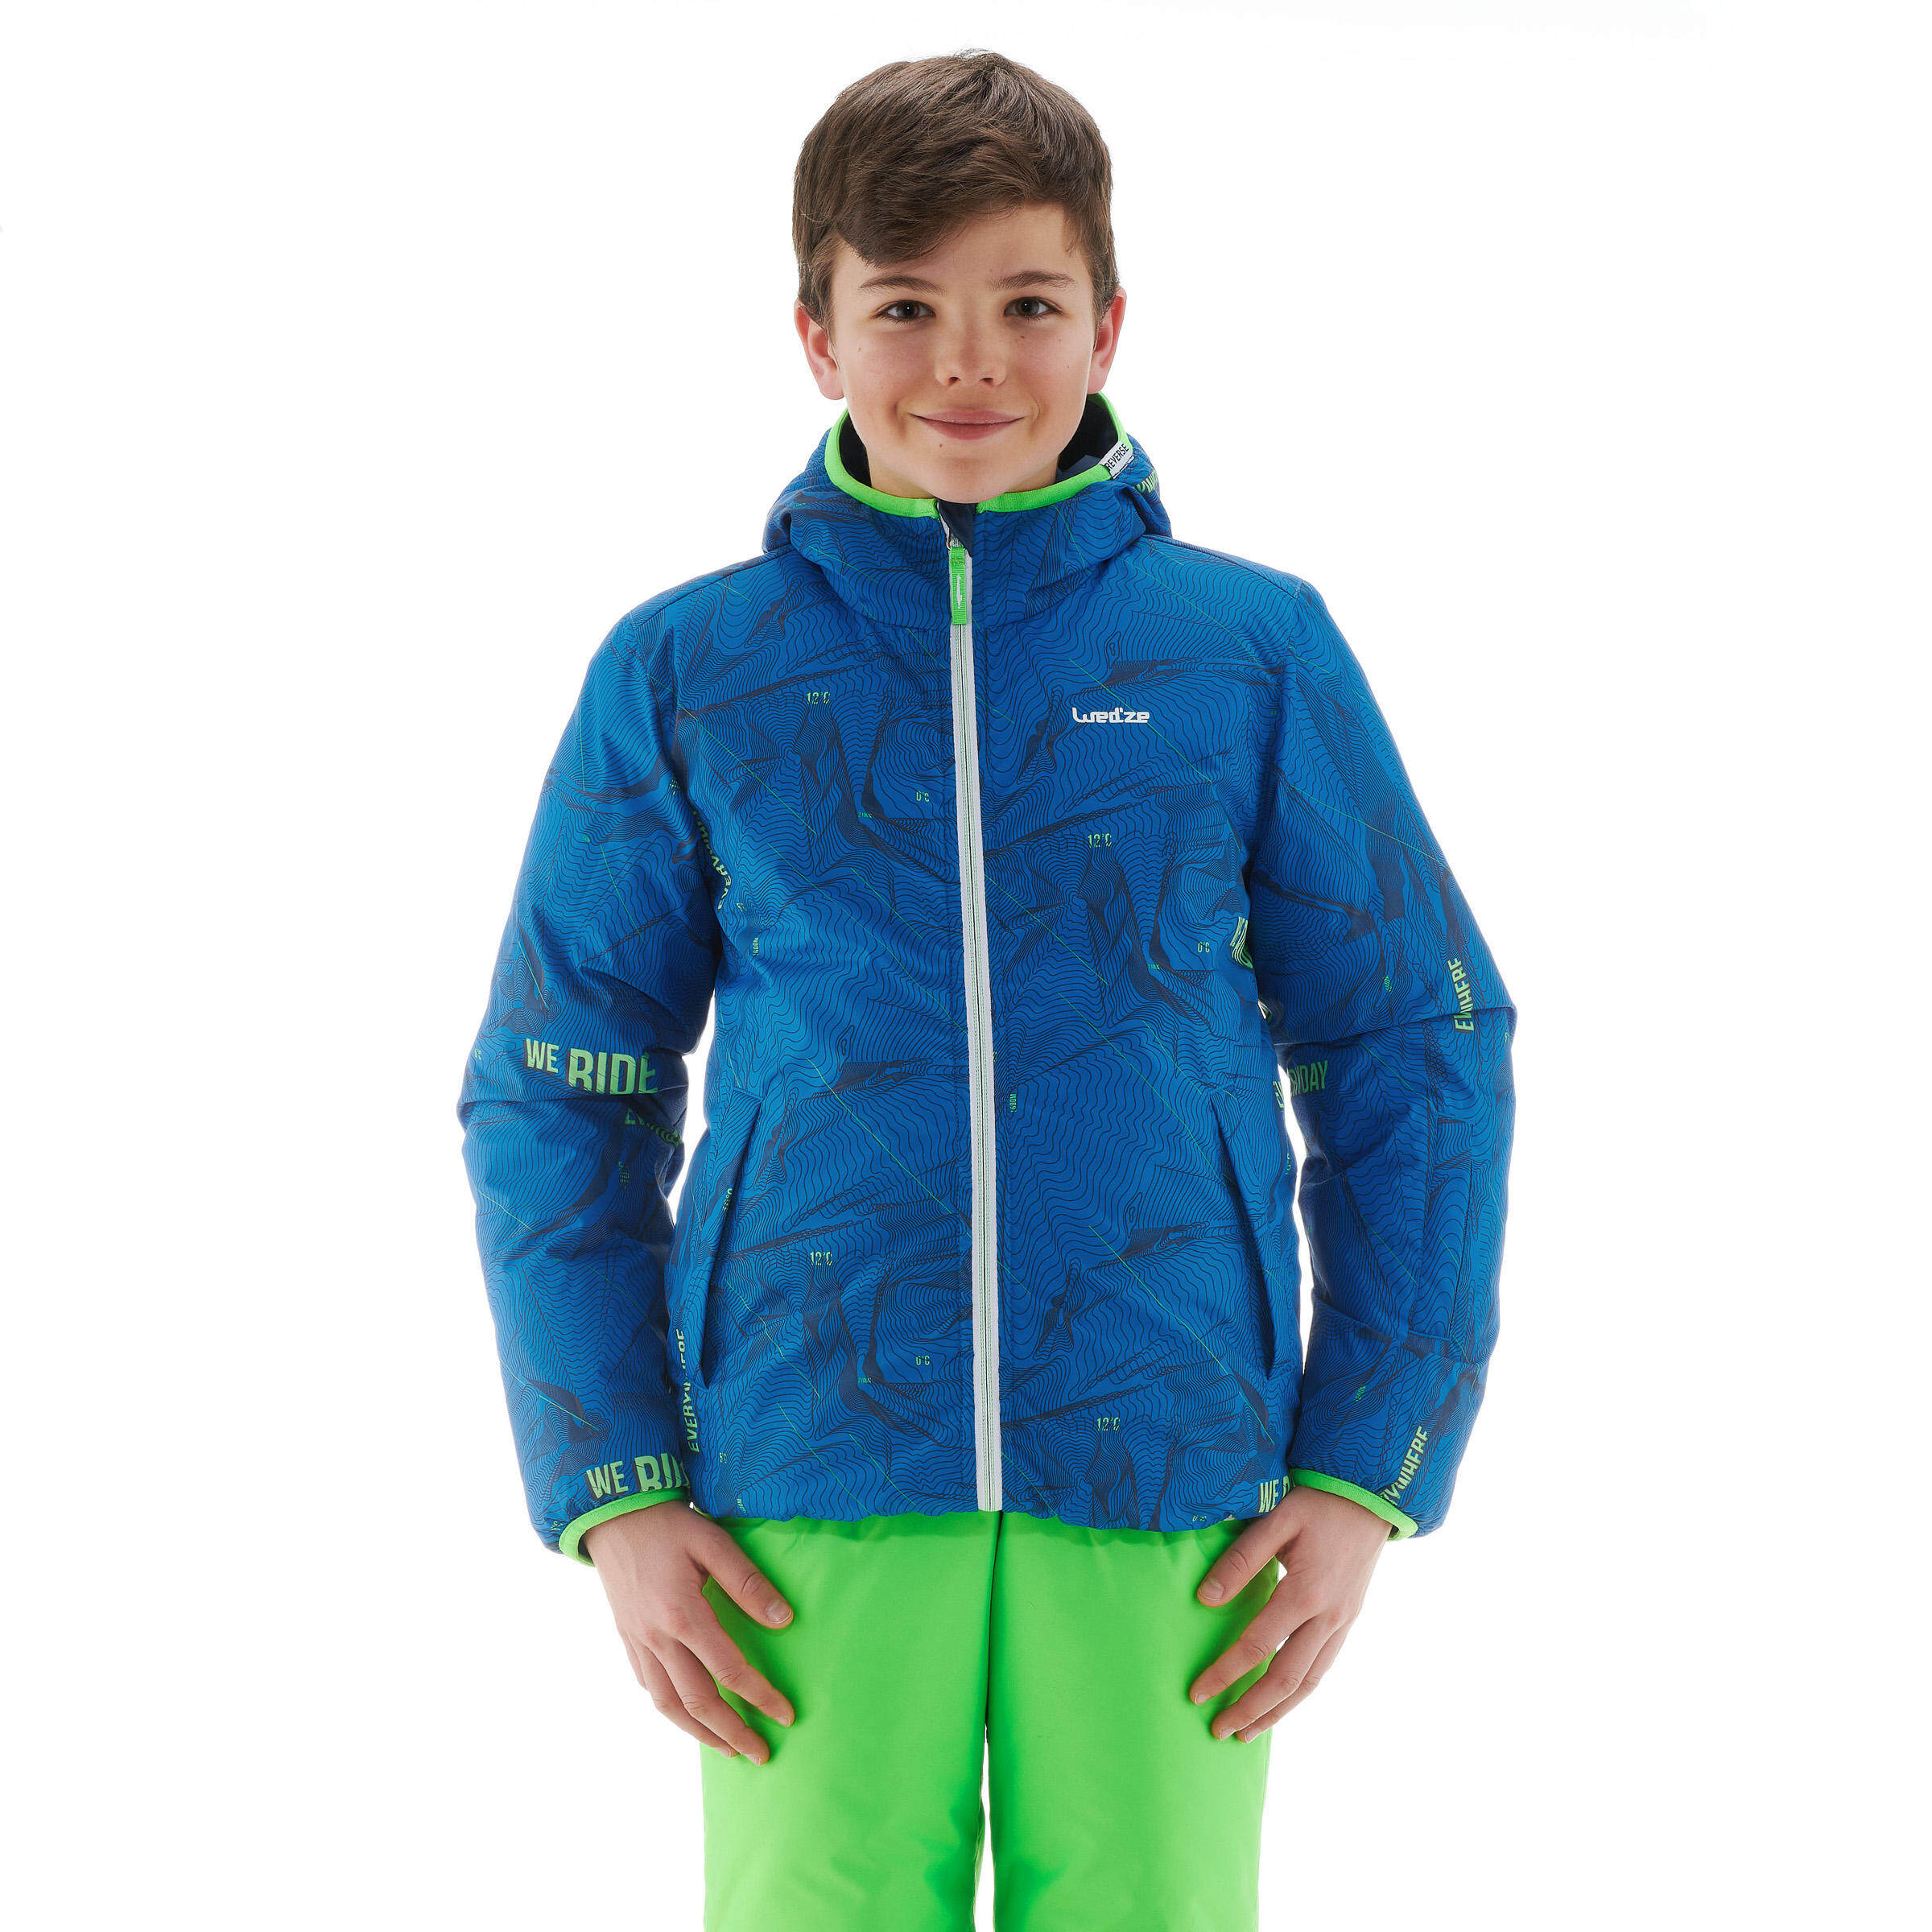 เสื้อแจ็คเก็ตเล่นสกีแบบใส่ได้สองด้านสำหรับเด็กรุ่น 100 (สีฟ้า/เขียว) เด็กผู้ชาย 4 ถึง 16 ปี สกี เสื้อผ้าเด็กผู้ชาย เสื้อผ้า สกี